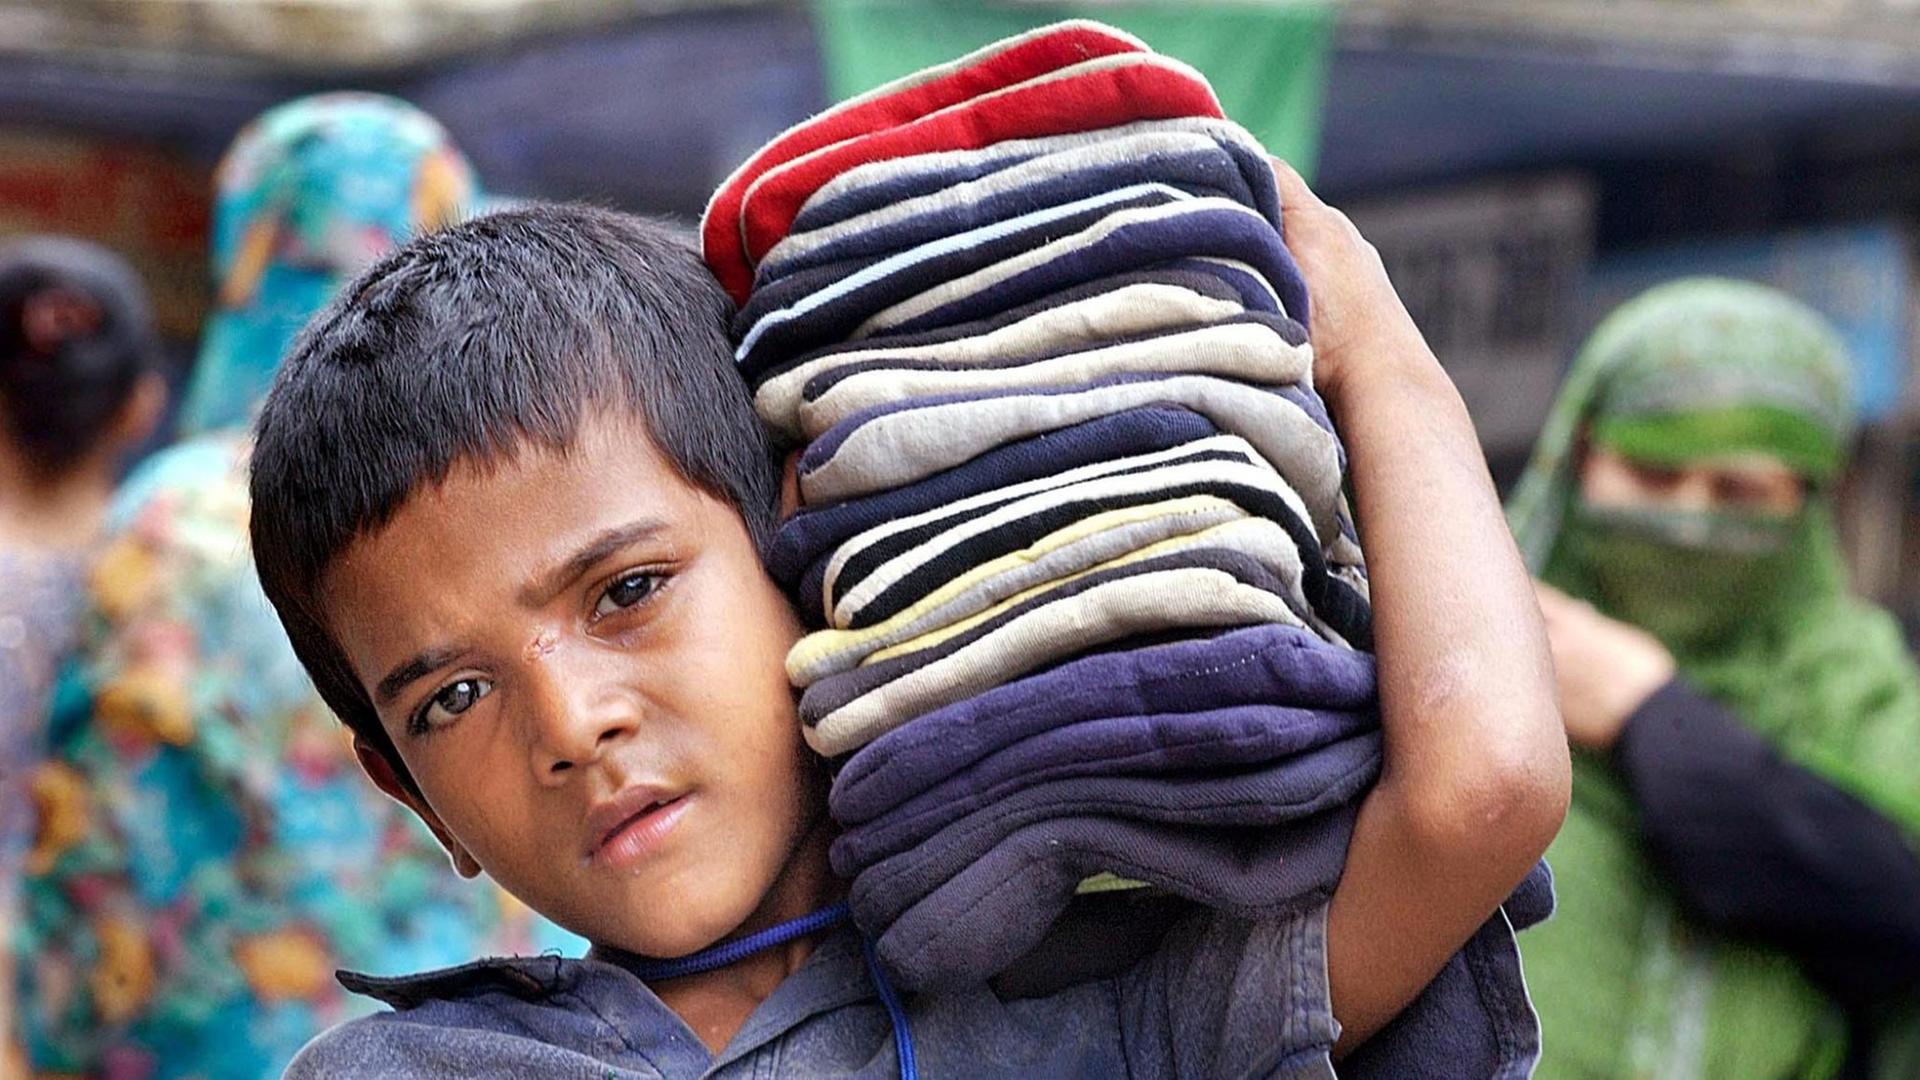 Viele Kinder in Indien müssen arbeiten, meist in Textilfabriken. Man sieht einen Jungen, der Stoffe auf der Schulter trägt.